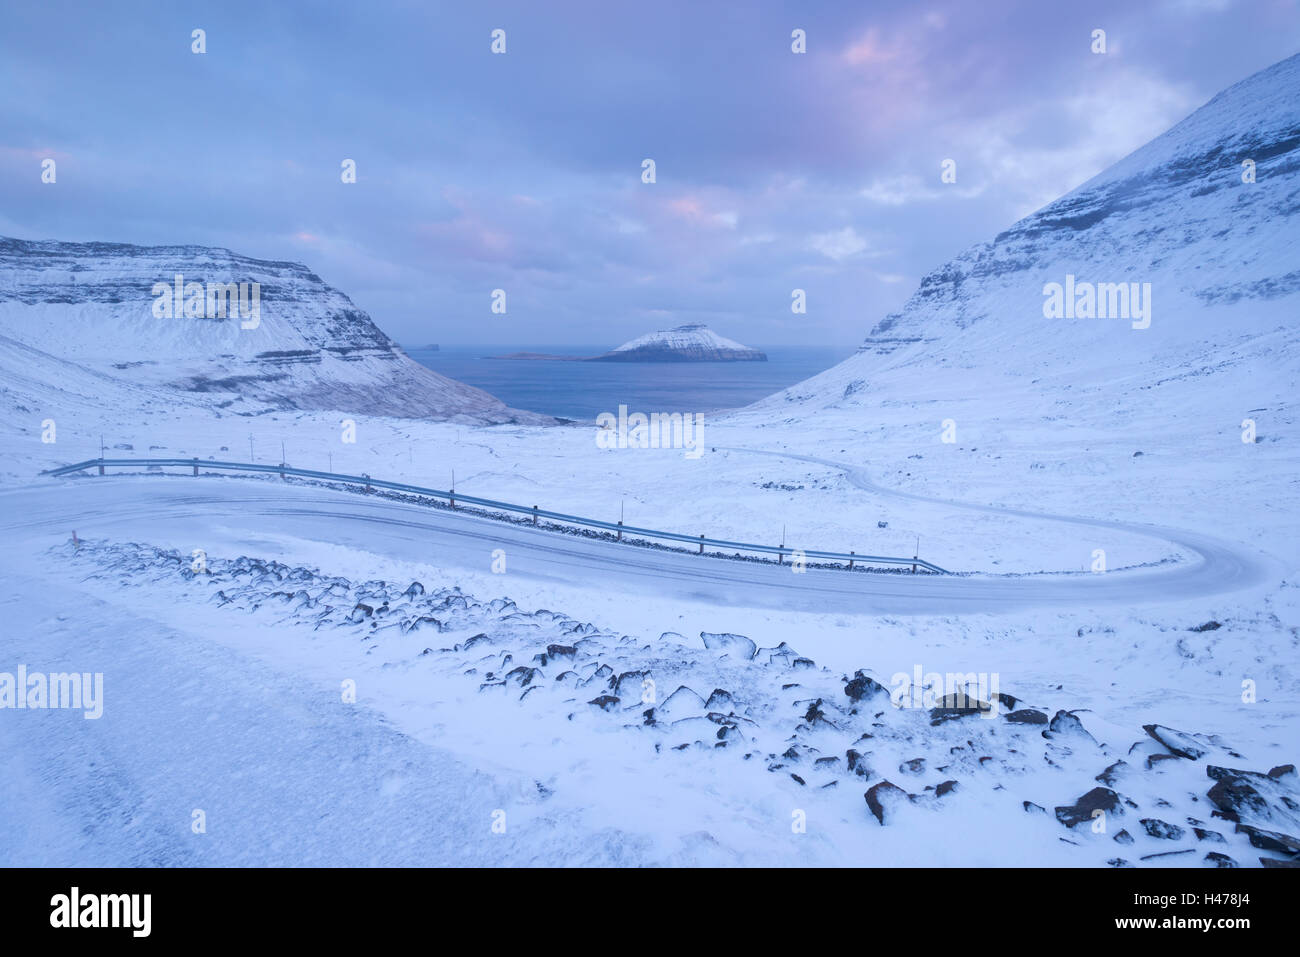 Schneebedeckte Straße schlängelt sich zwischen Bergen in der Nähe von Nordradalur auf der Insel Streymoy, Färöer Inseln, Dänemark, Europa. Gewinnen Stockfoto